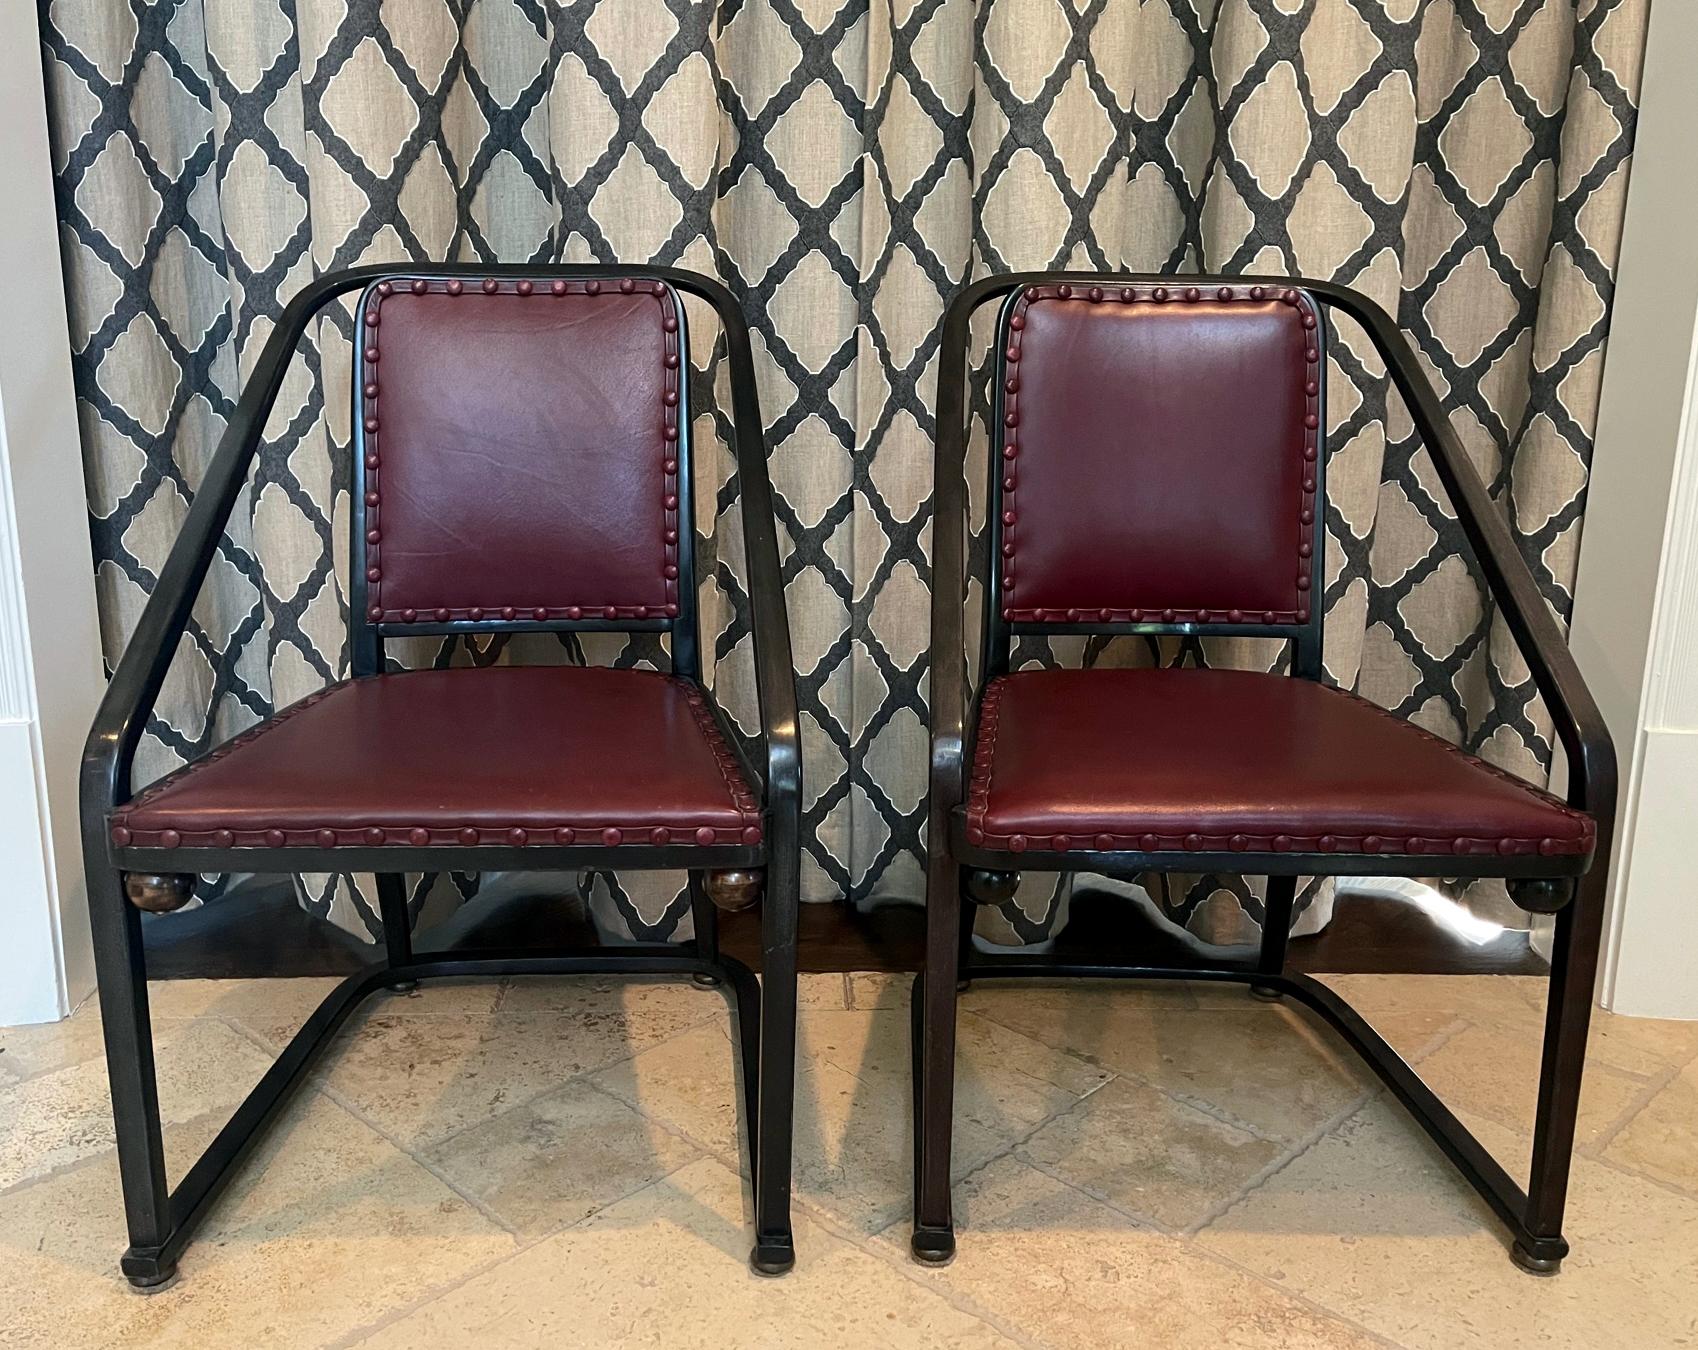 Paire de fantastiques chaises en bois courbé de la Sécession viennoise avec tapisserie, conçues par Josef Hoffman (1870-1956) et fabriquées par J. & J. Kohn, vers le début du 20e siècle. Ces fauteuils sont le modèle 725 B/F conçu en 1905 et sont